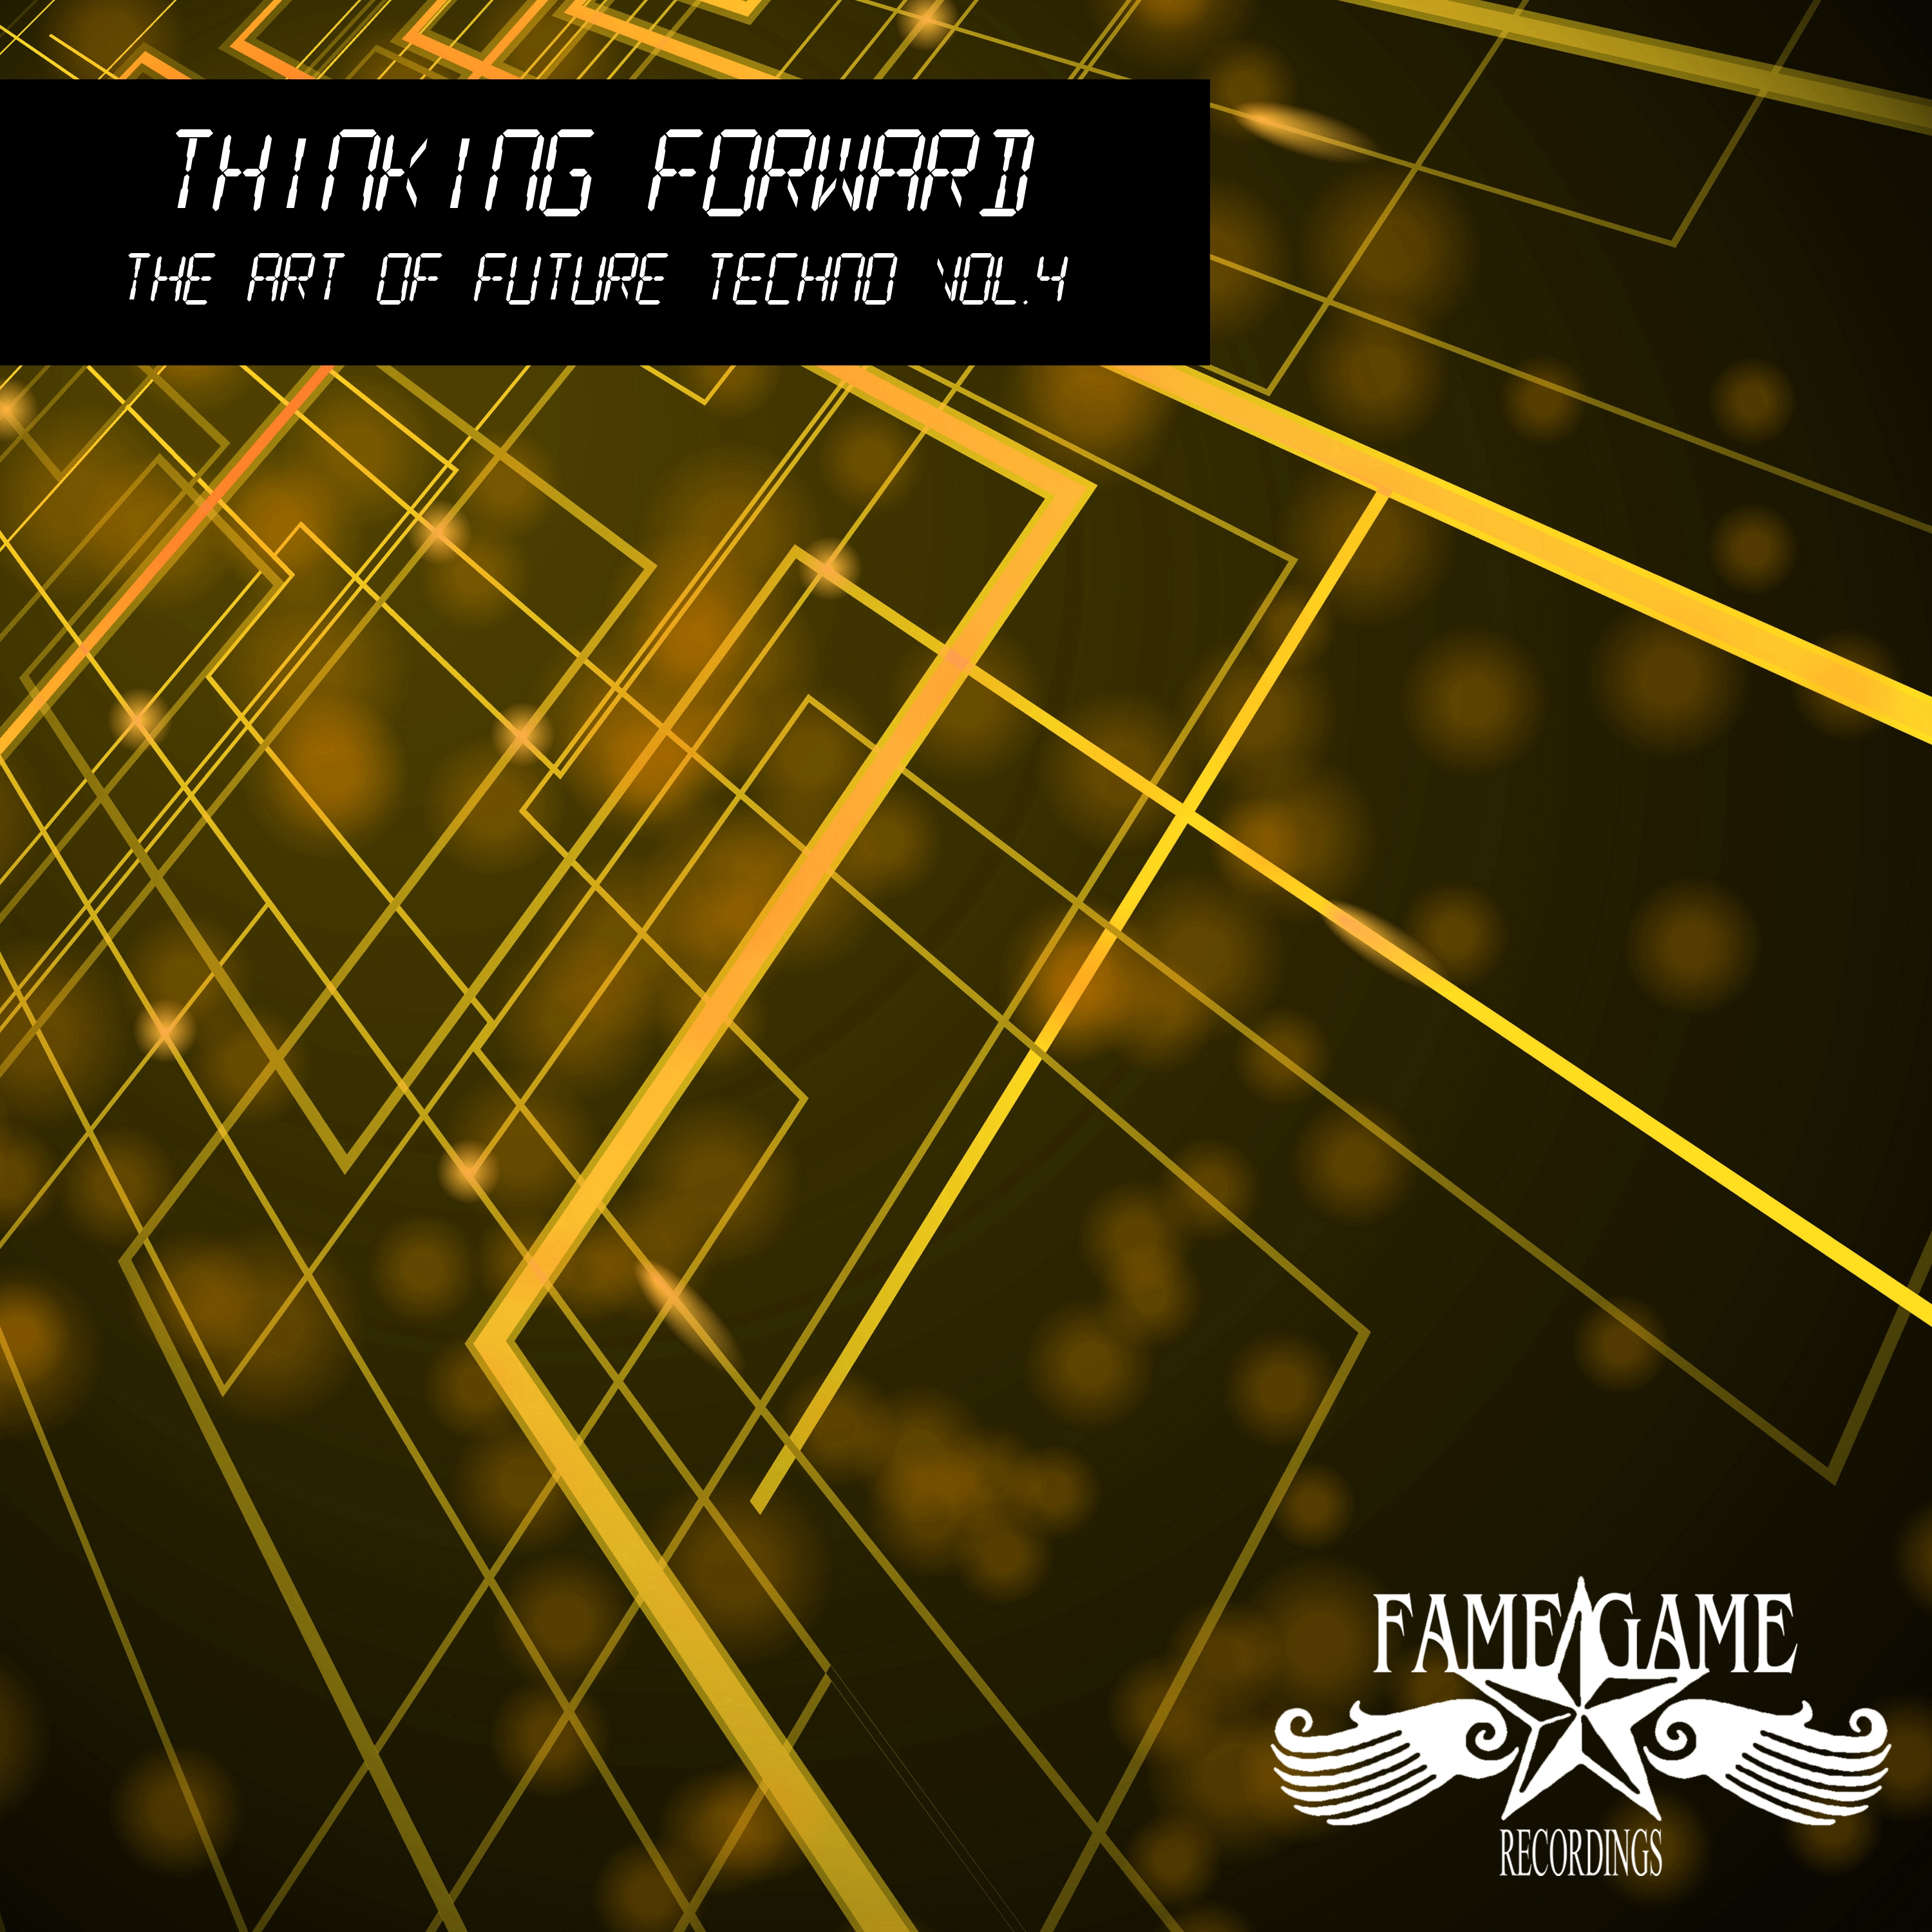 Thinking Foward, Vol. 4 - The Art of Future Techno